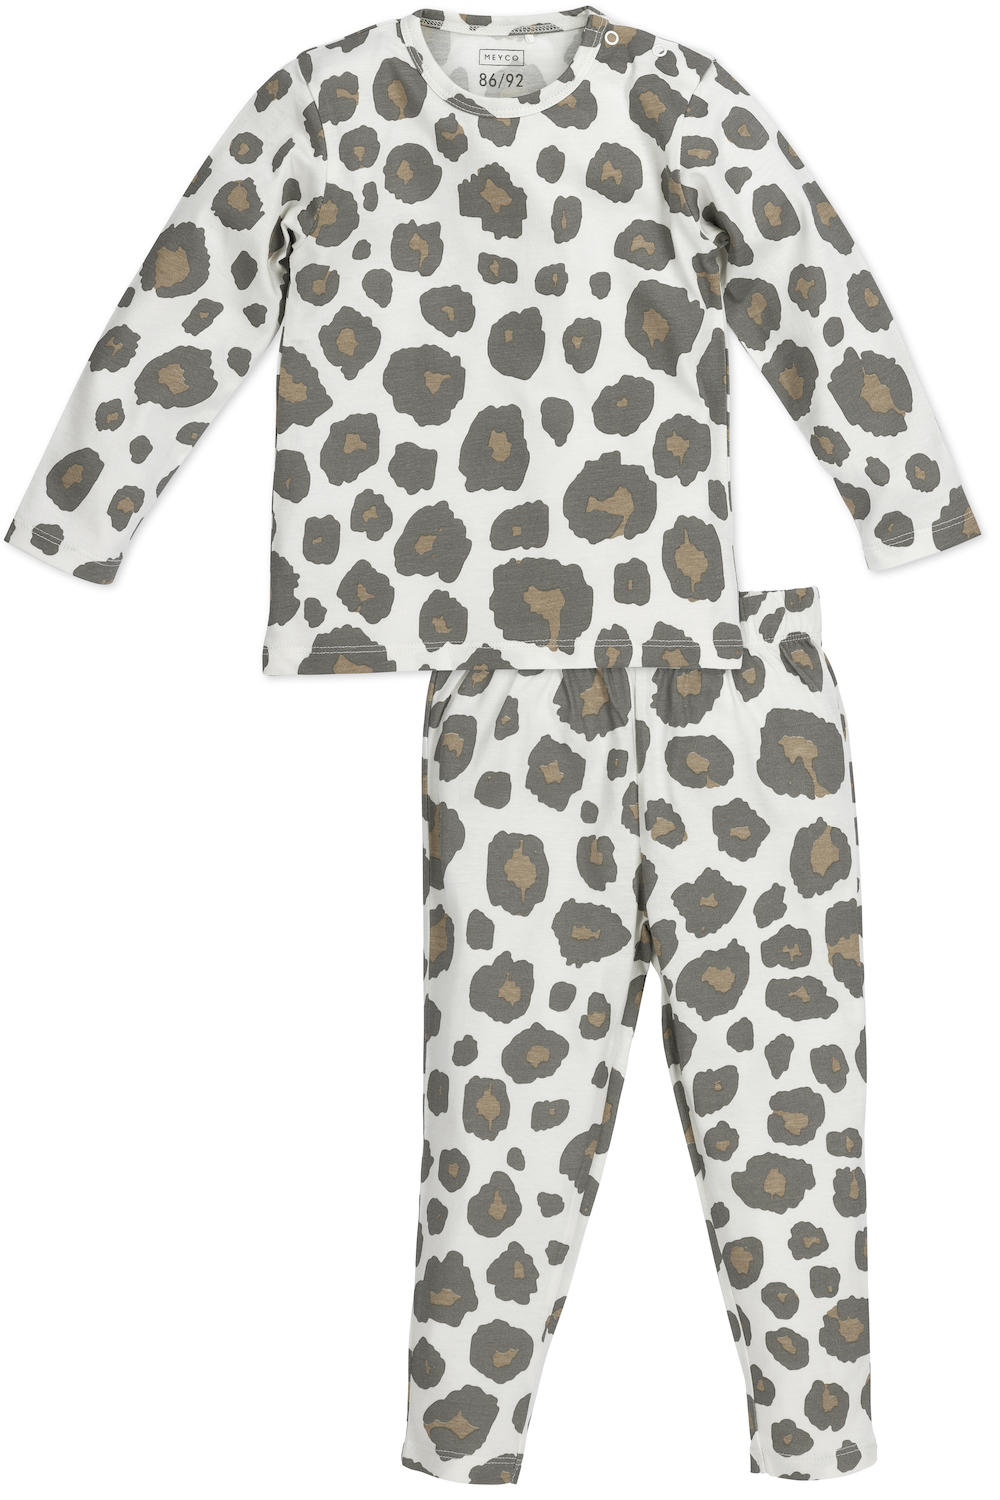 Pyjama Panter - neutral - 98/104